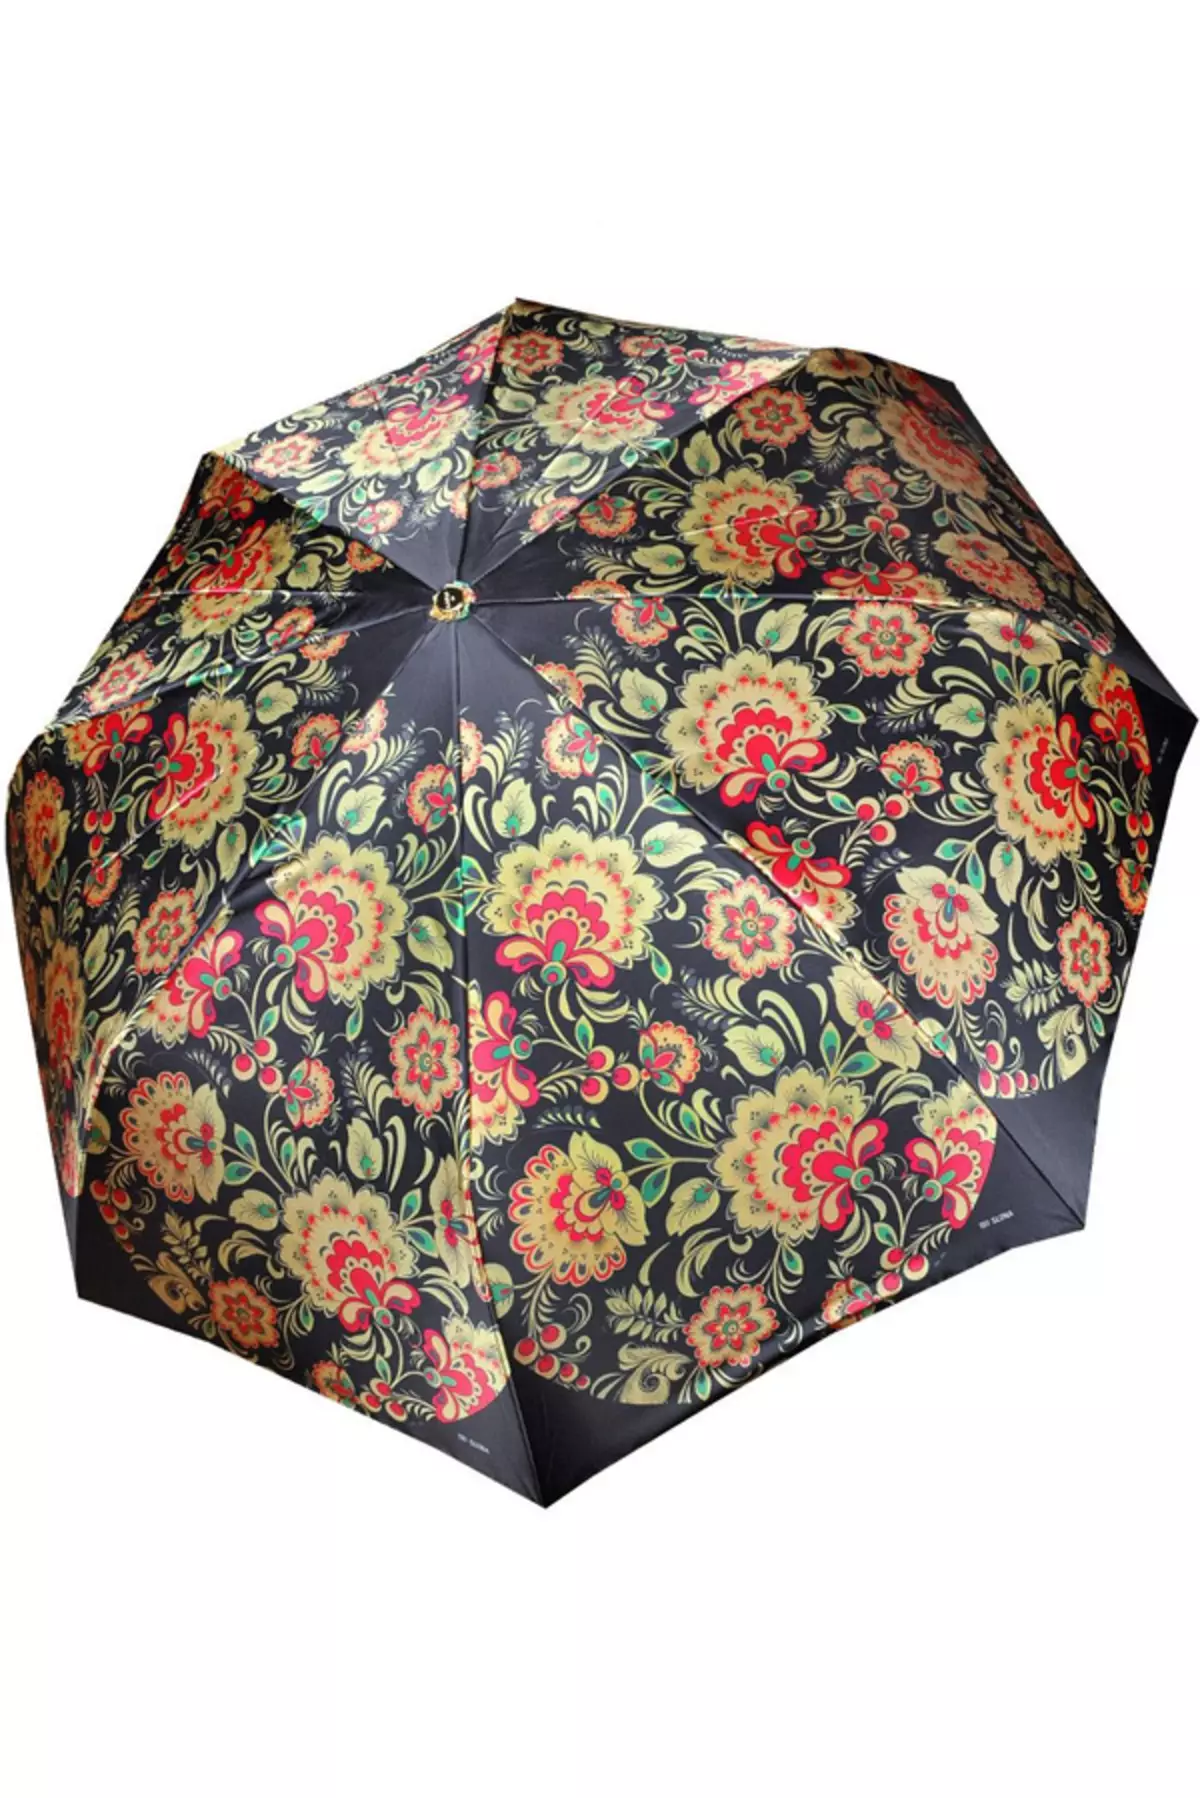 Sunbrella (linepe tse 72): Basali ba bopalai ba purwork upbrella-cane 15238_55